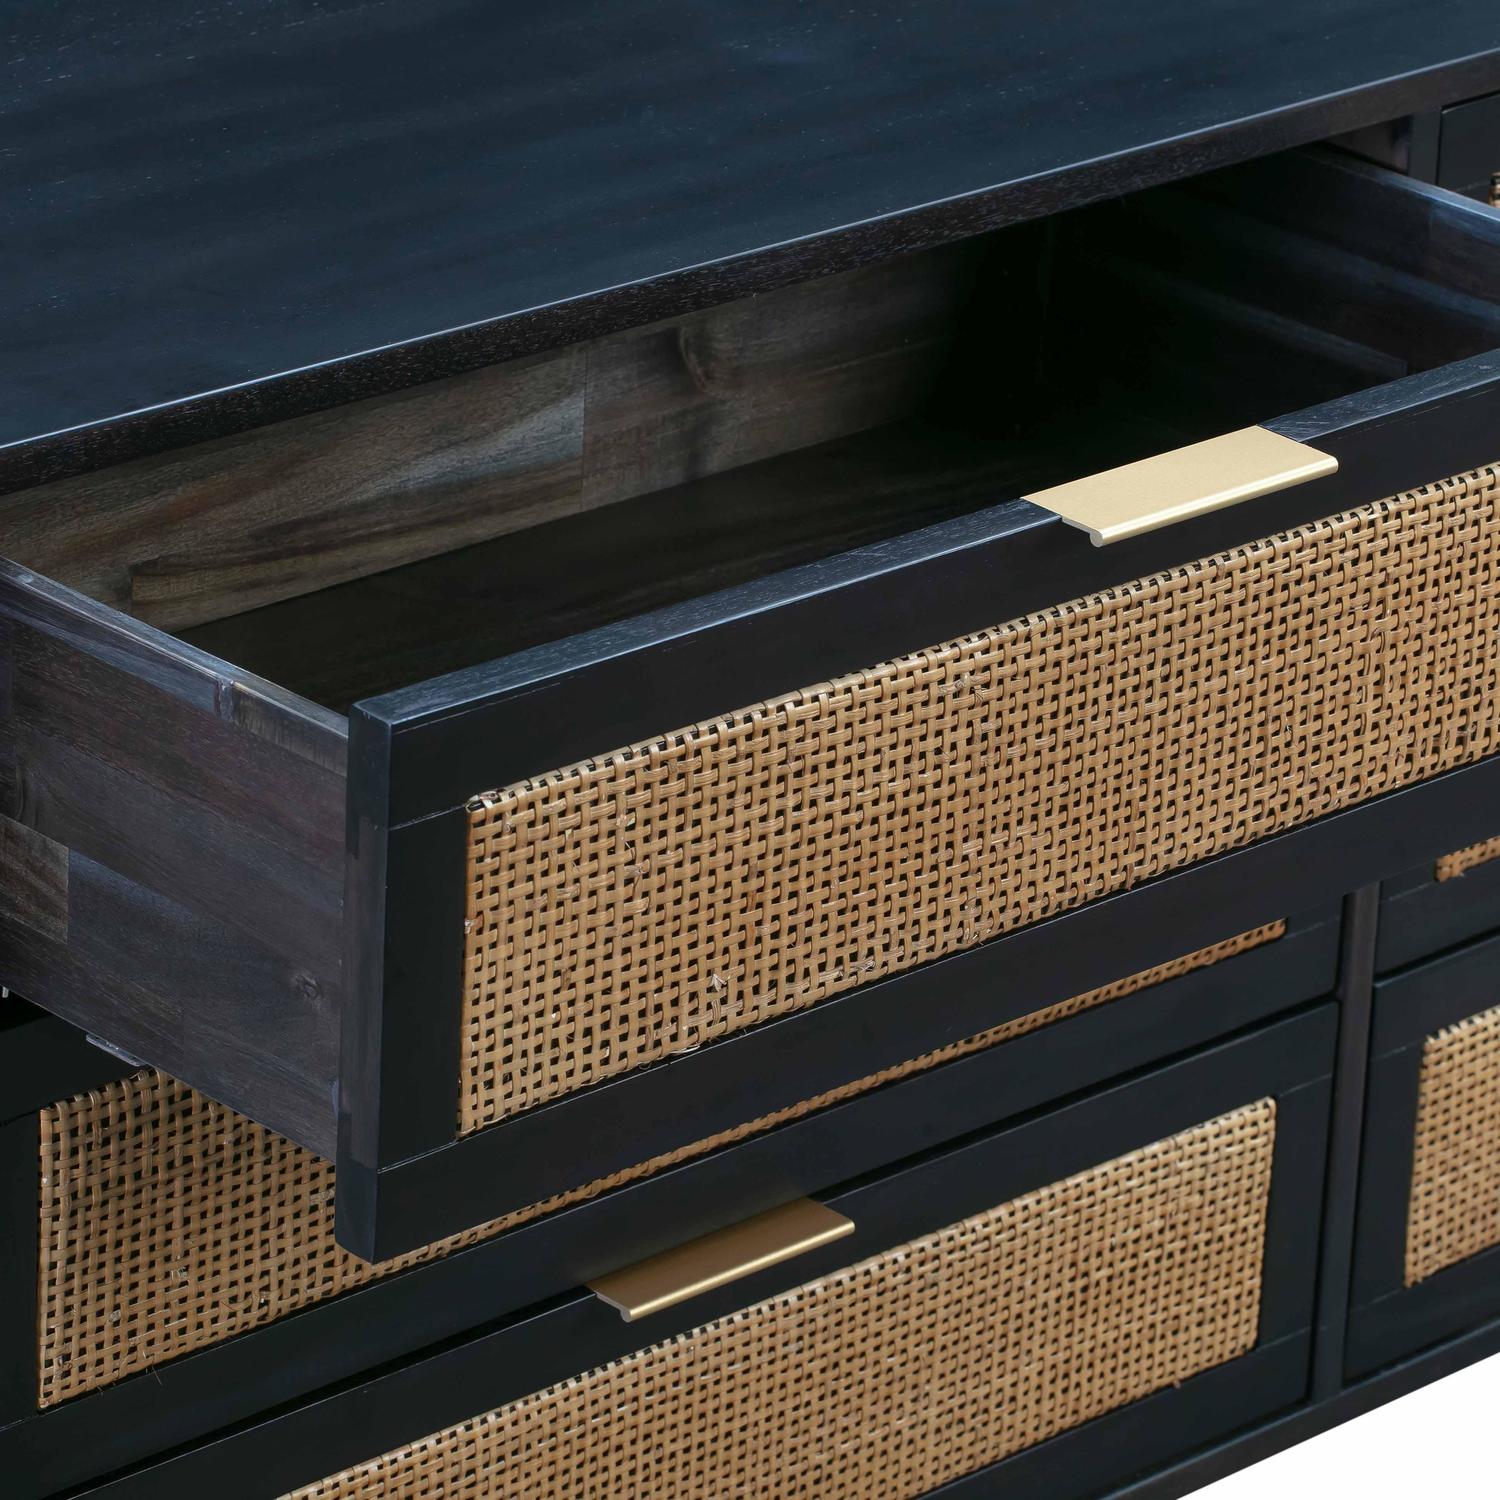 chestnut color dresser Tov Furniture Dressers Black